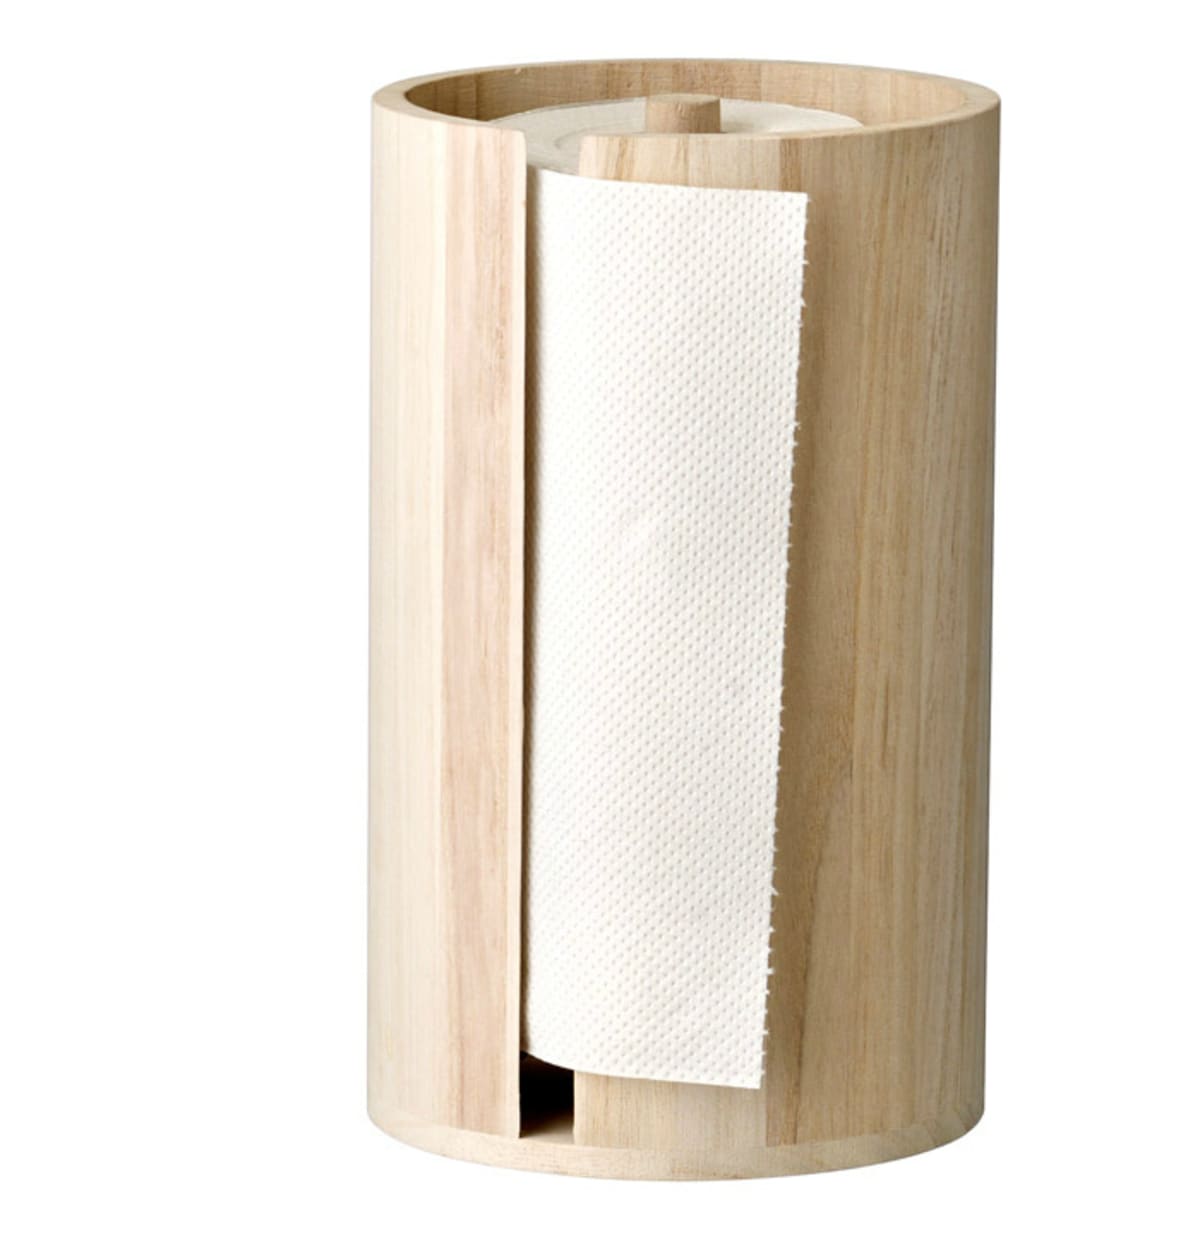 Dřevěný držák na kuchyňské papírové role, KITCHENETTESHOP.CZ, 525 Kč